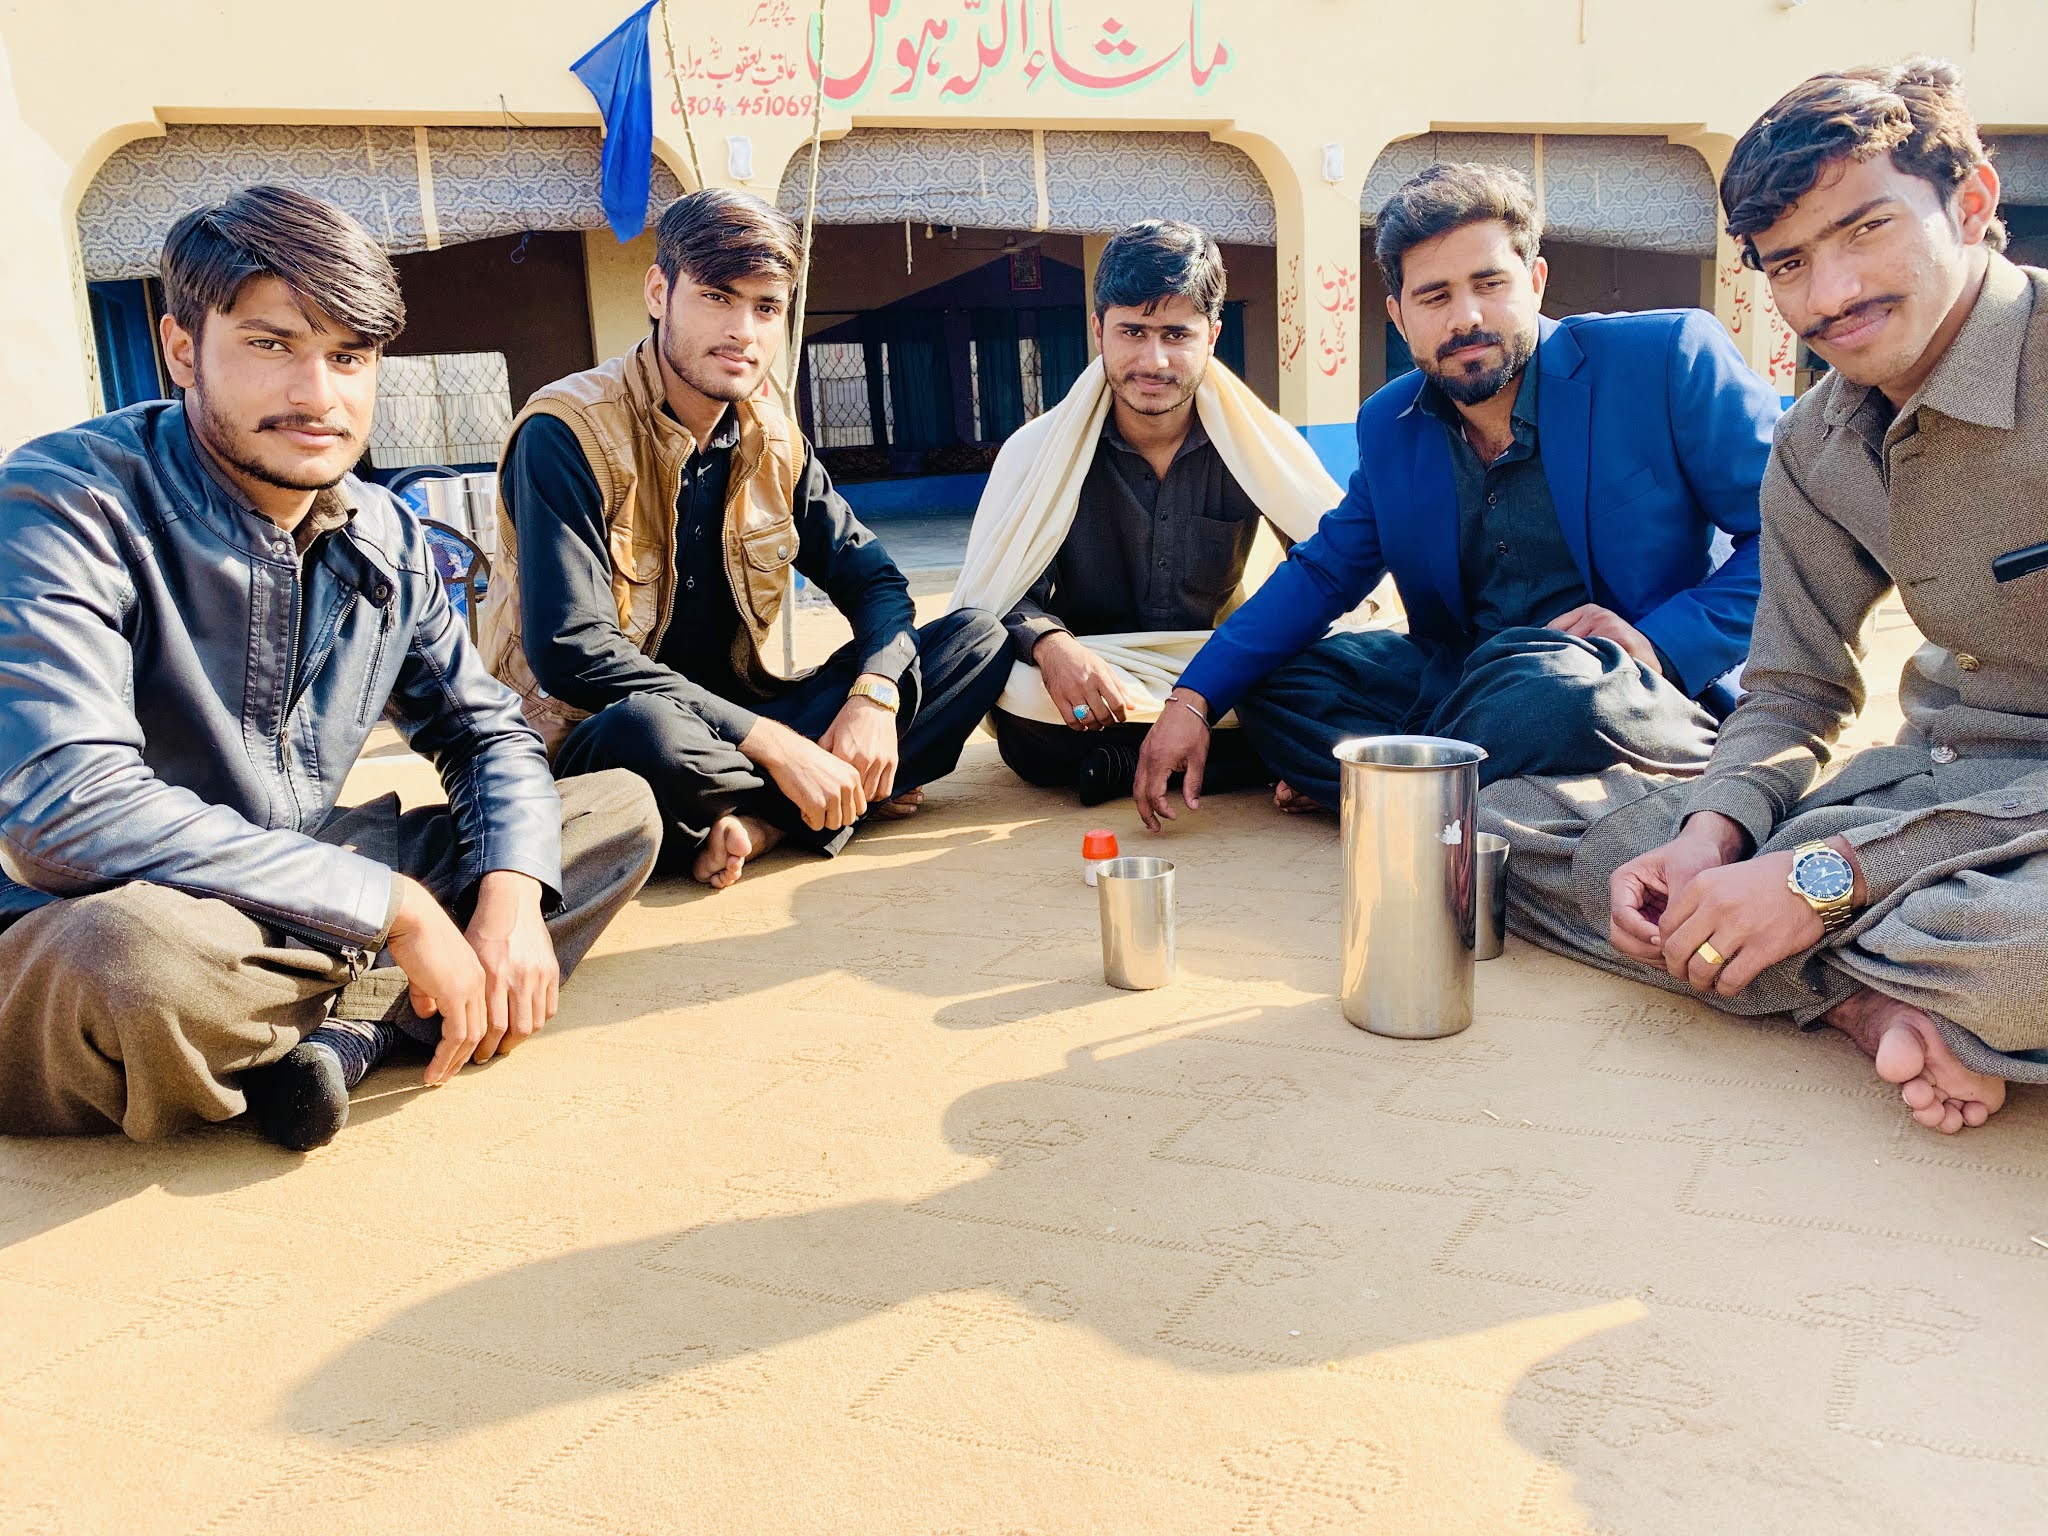 007 Group of Chakwal at Mulhal Mughlan